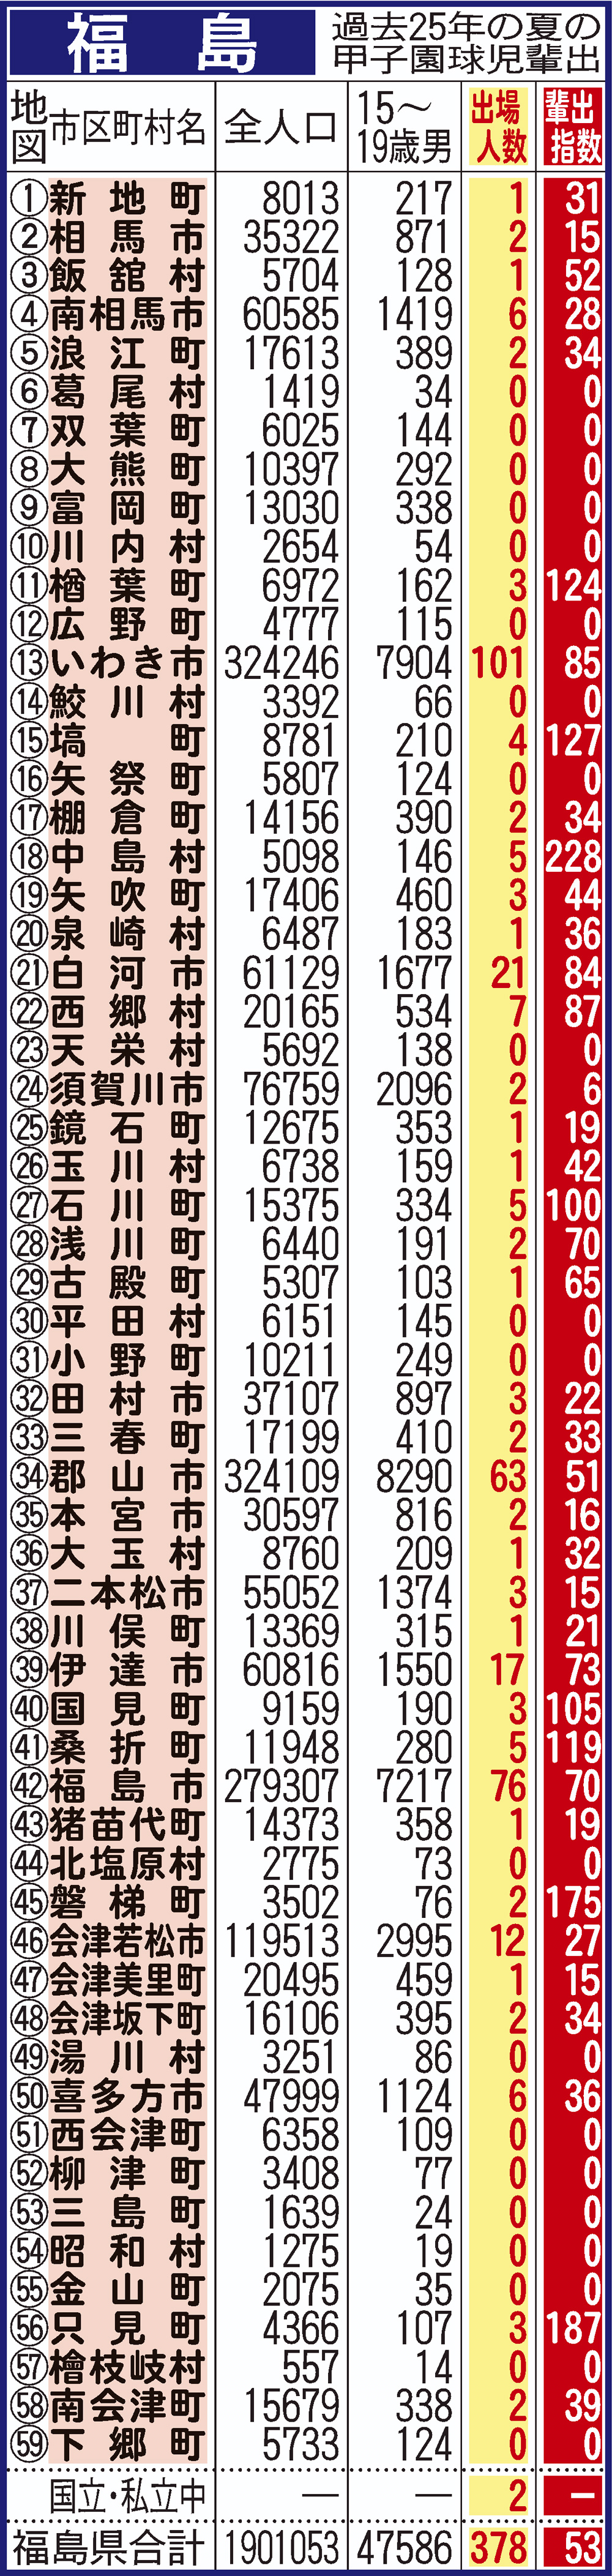 過去25年間における福島県地域別の甲子園輩出指数